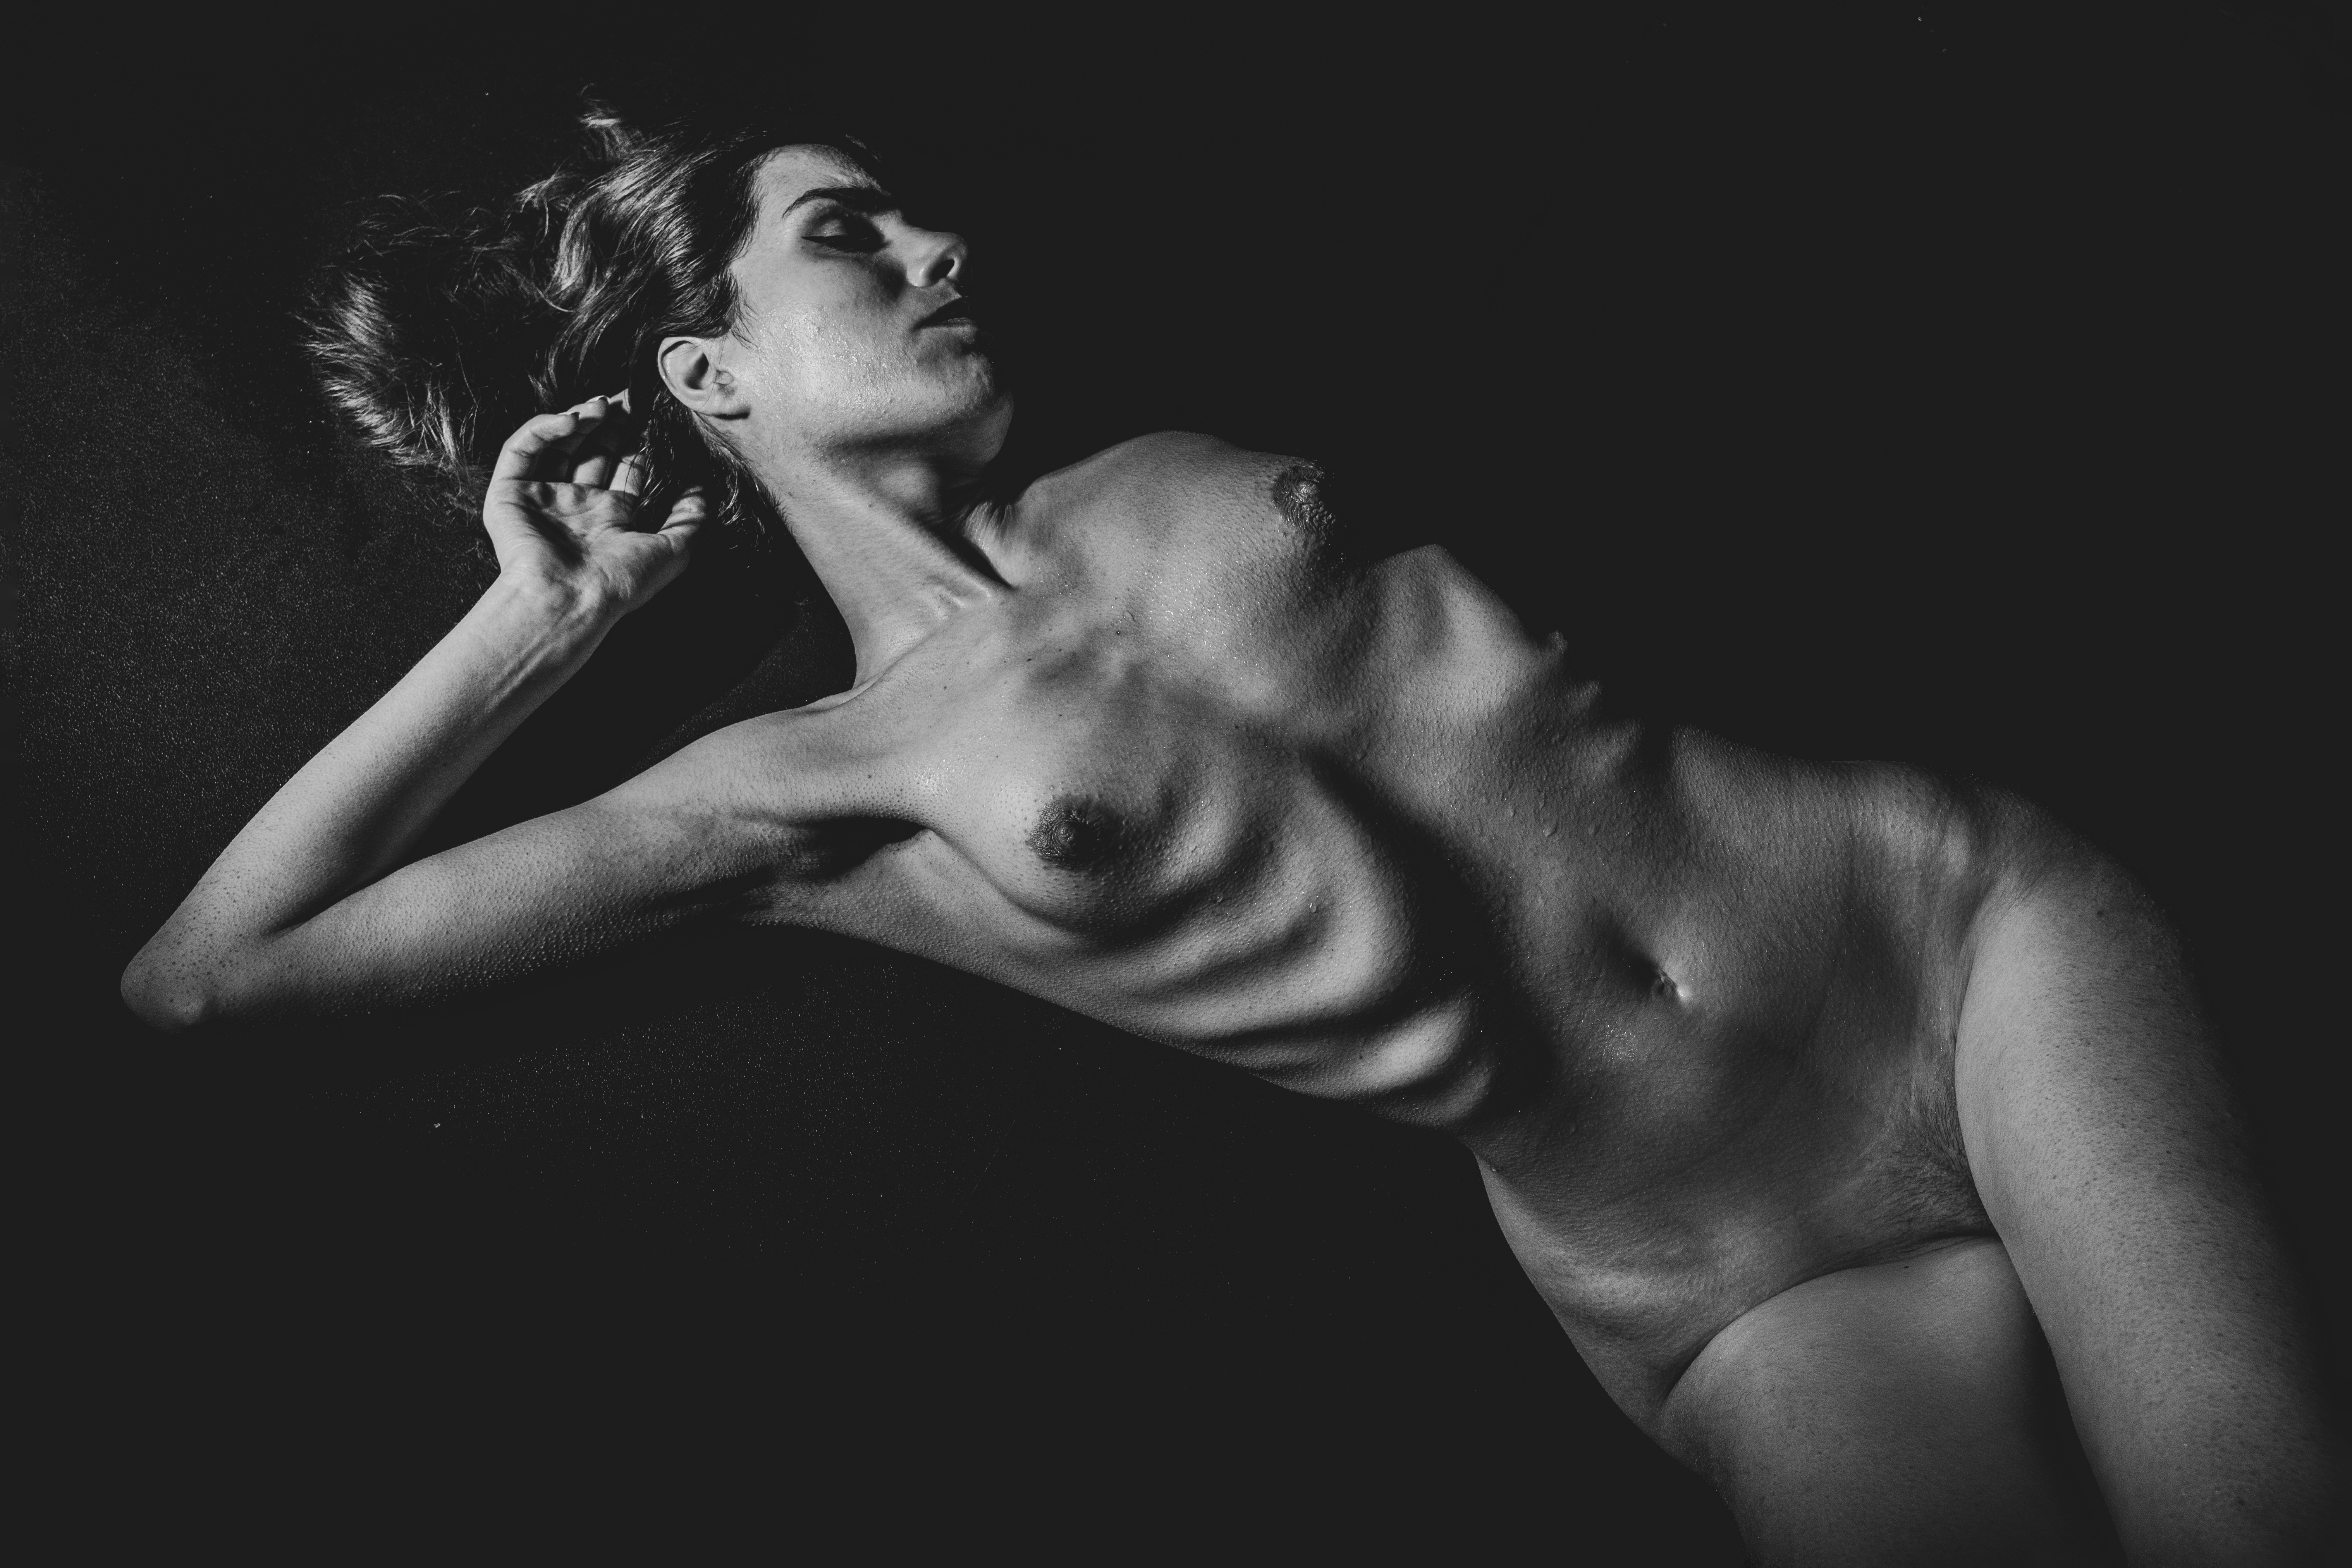 ΕΛΛΗΝΙΚΗ ΦΩΤΟΓΡΑΦΙΚΗ ΕΤΑΙΡΙΑ: Έκθεση φωτογραφίας καλλιτεχνικού γυμνού για τα 10 χρόνια workshop γυμνού